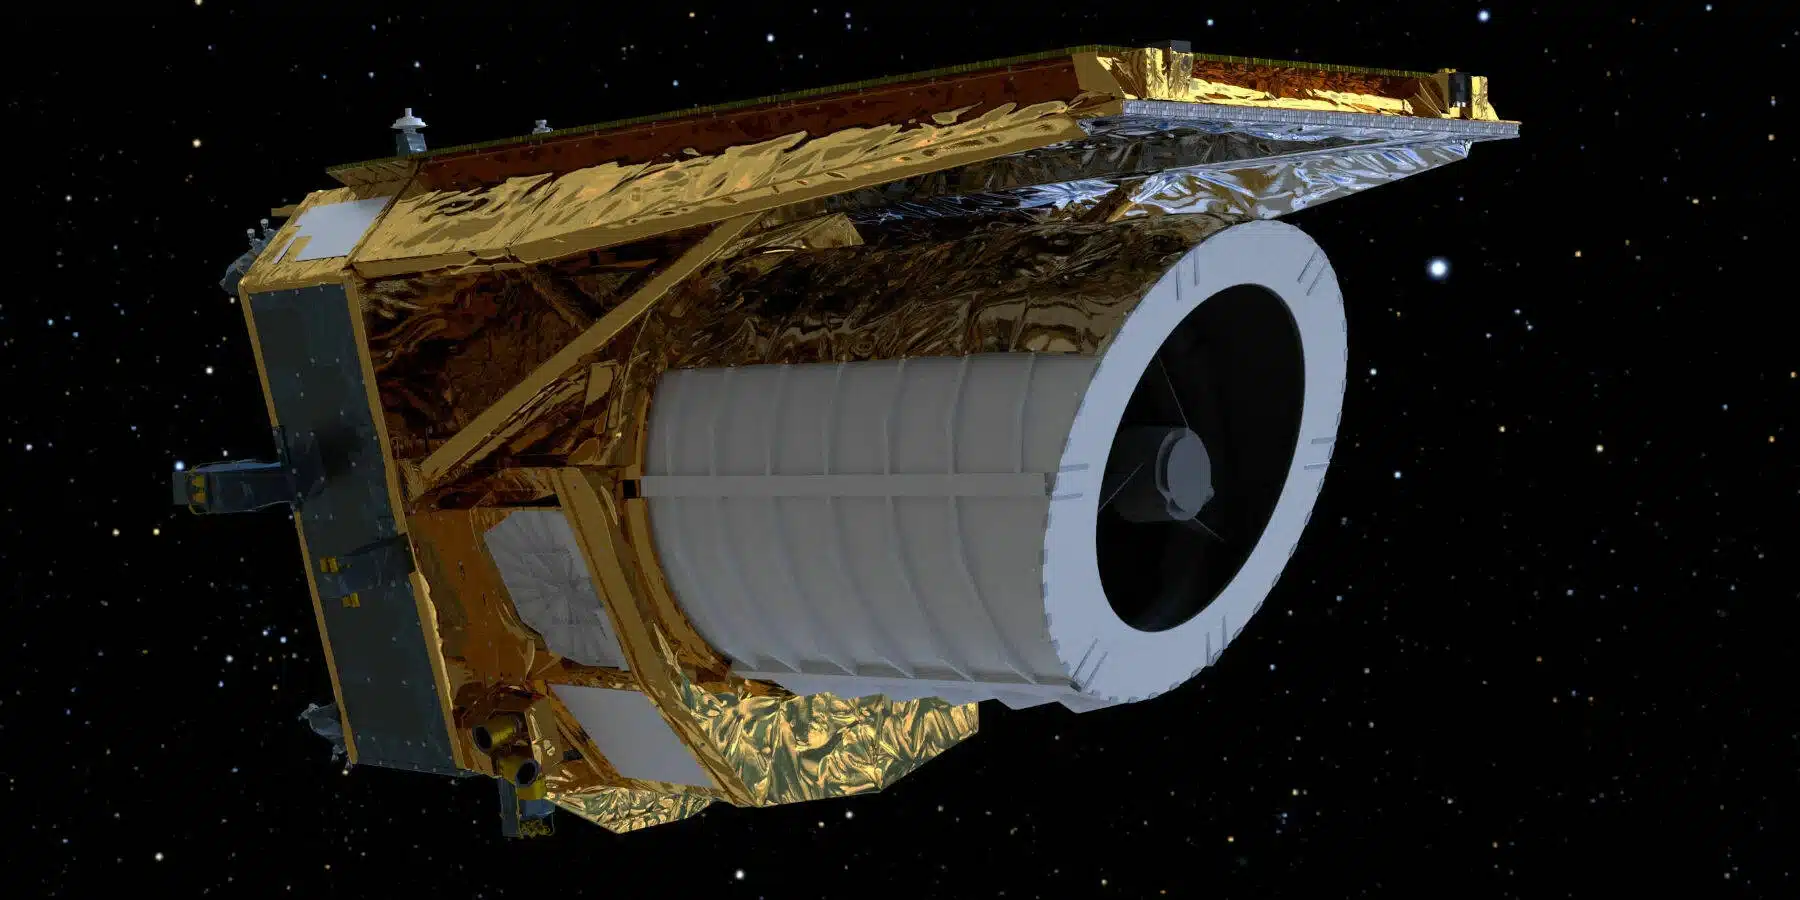 ユークリッド宇宙望遠鏡の打ち上げが成功！ダークマターとダークエネルギーの解明が期待される